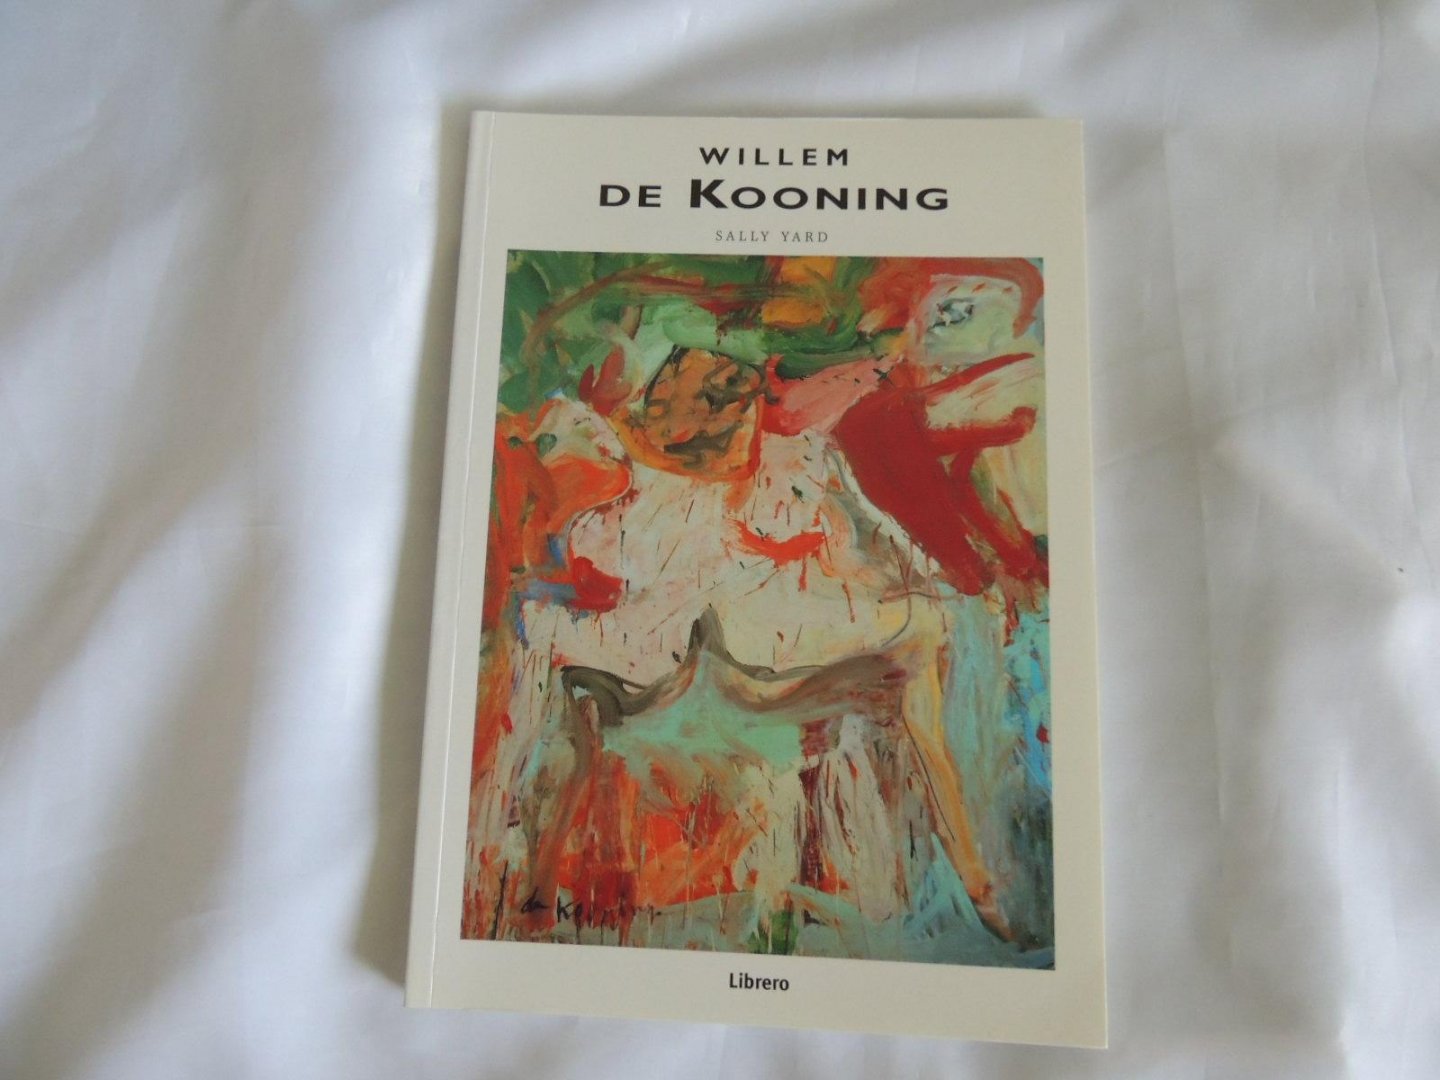 Yard, Sally - Willem de Kooning - Willem de Kooning